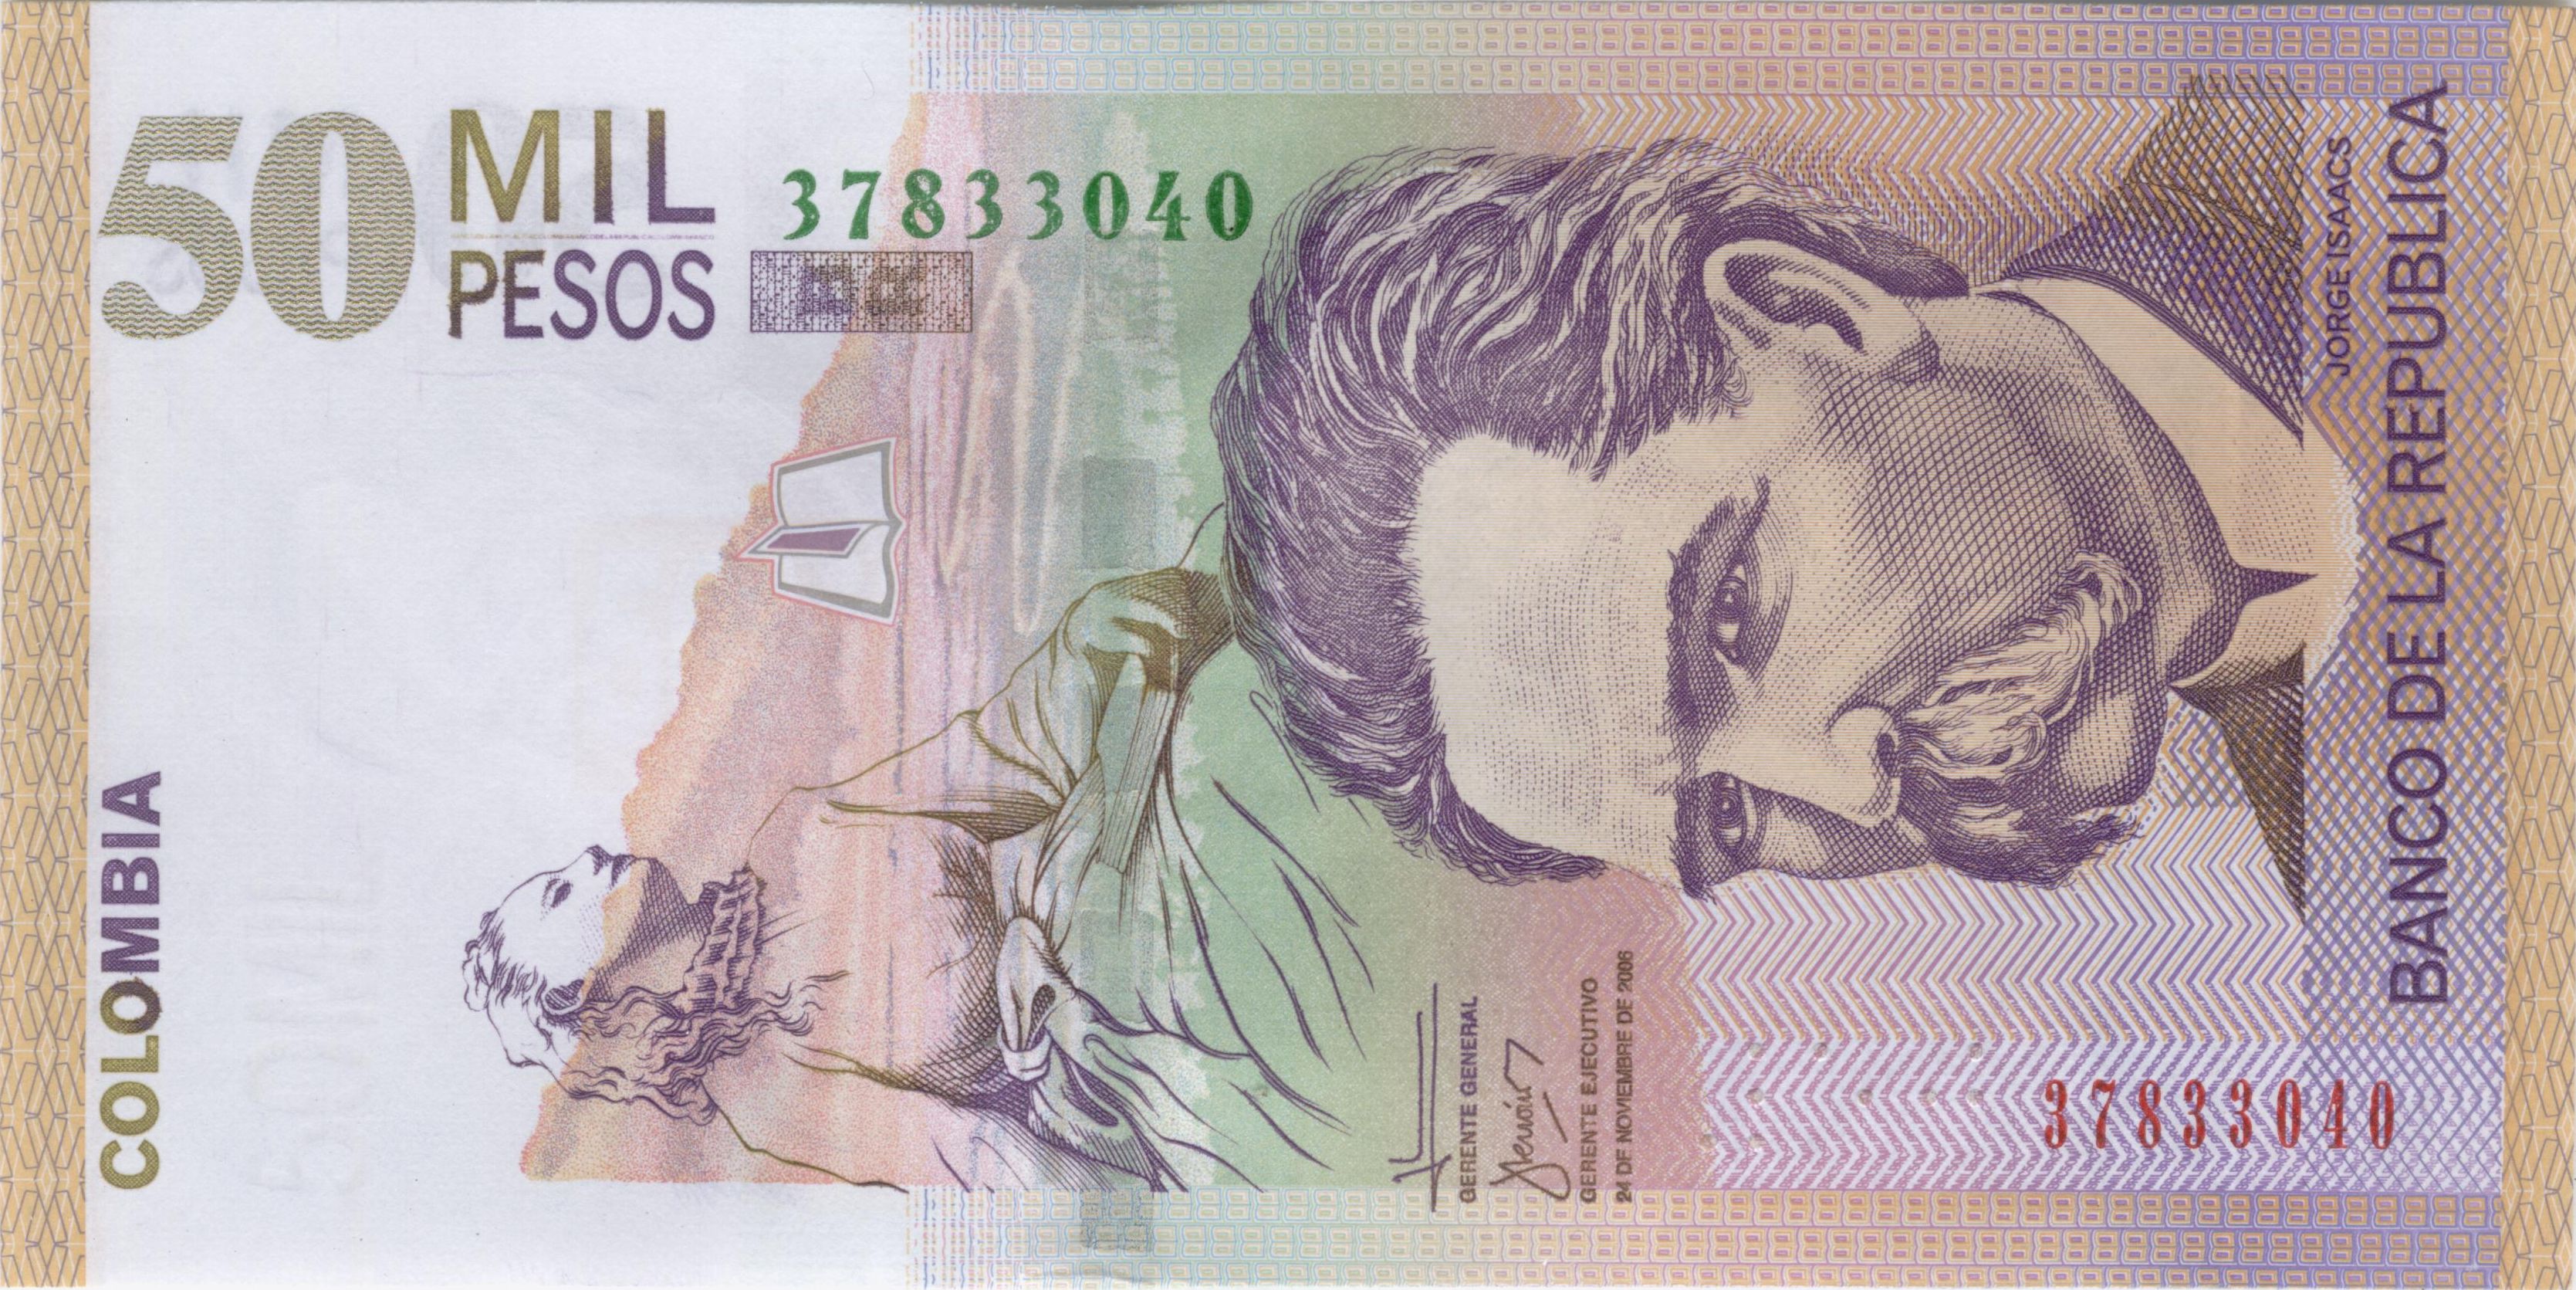 Los héroes de los viejos billetes en Colombia